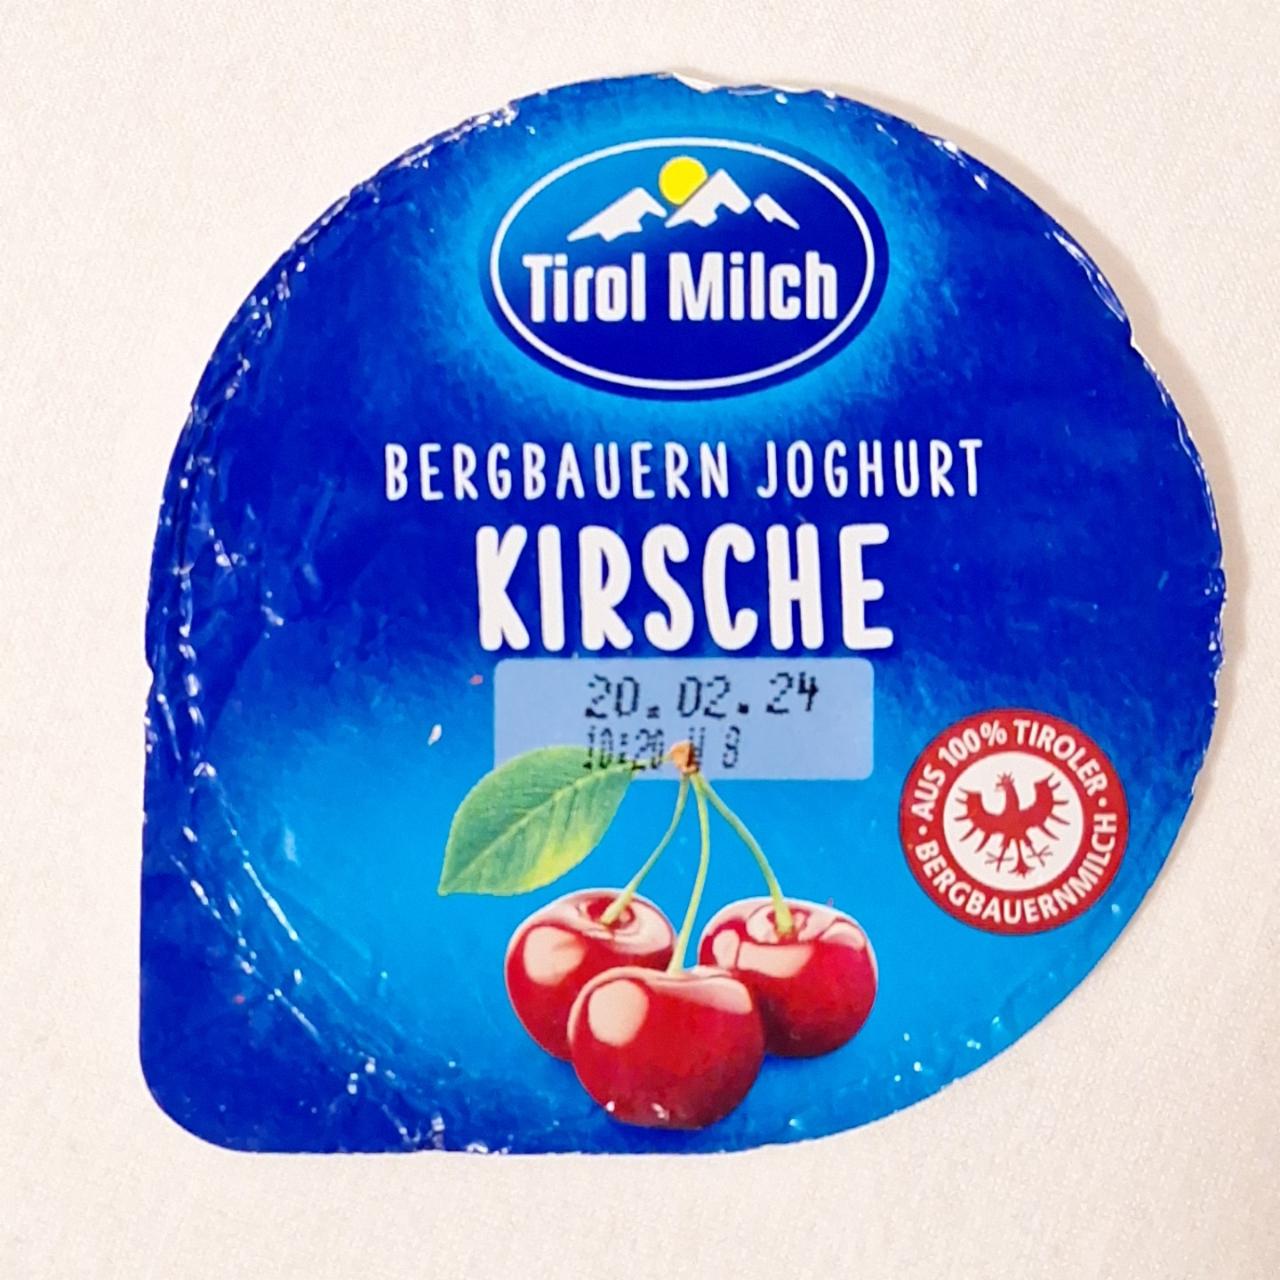 Fotografie - Bergbauern Joghurt Kirsche Tirol Milch